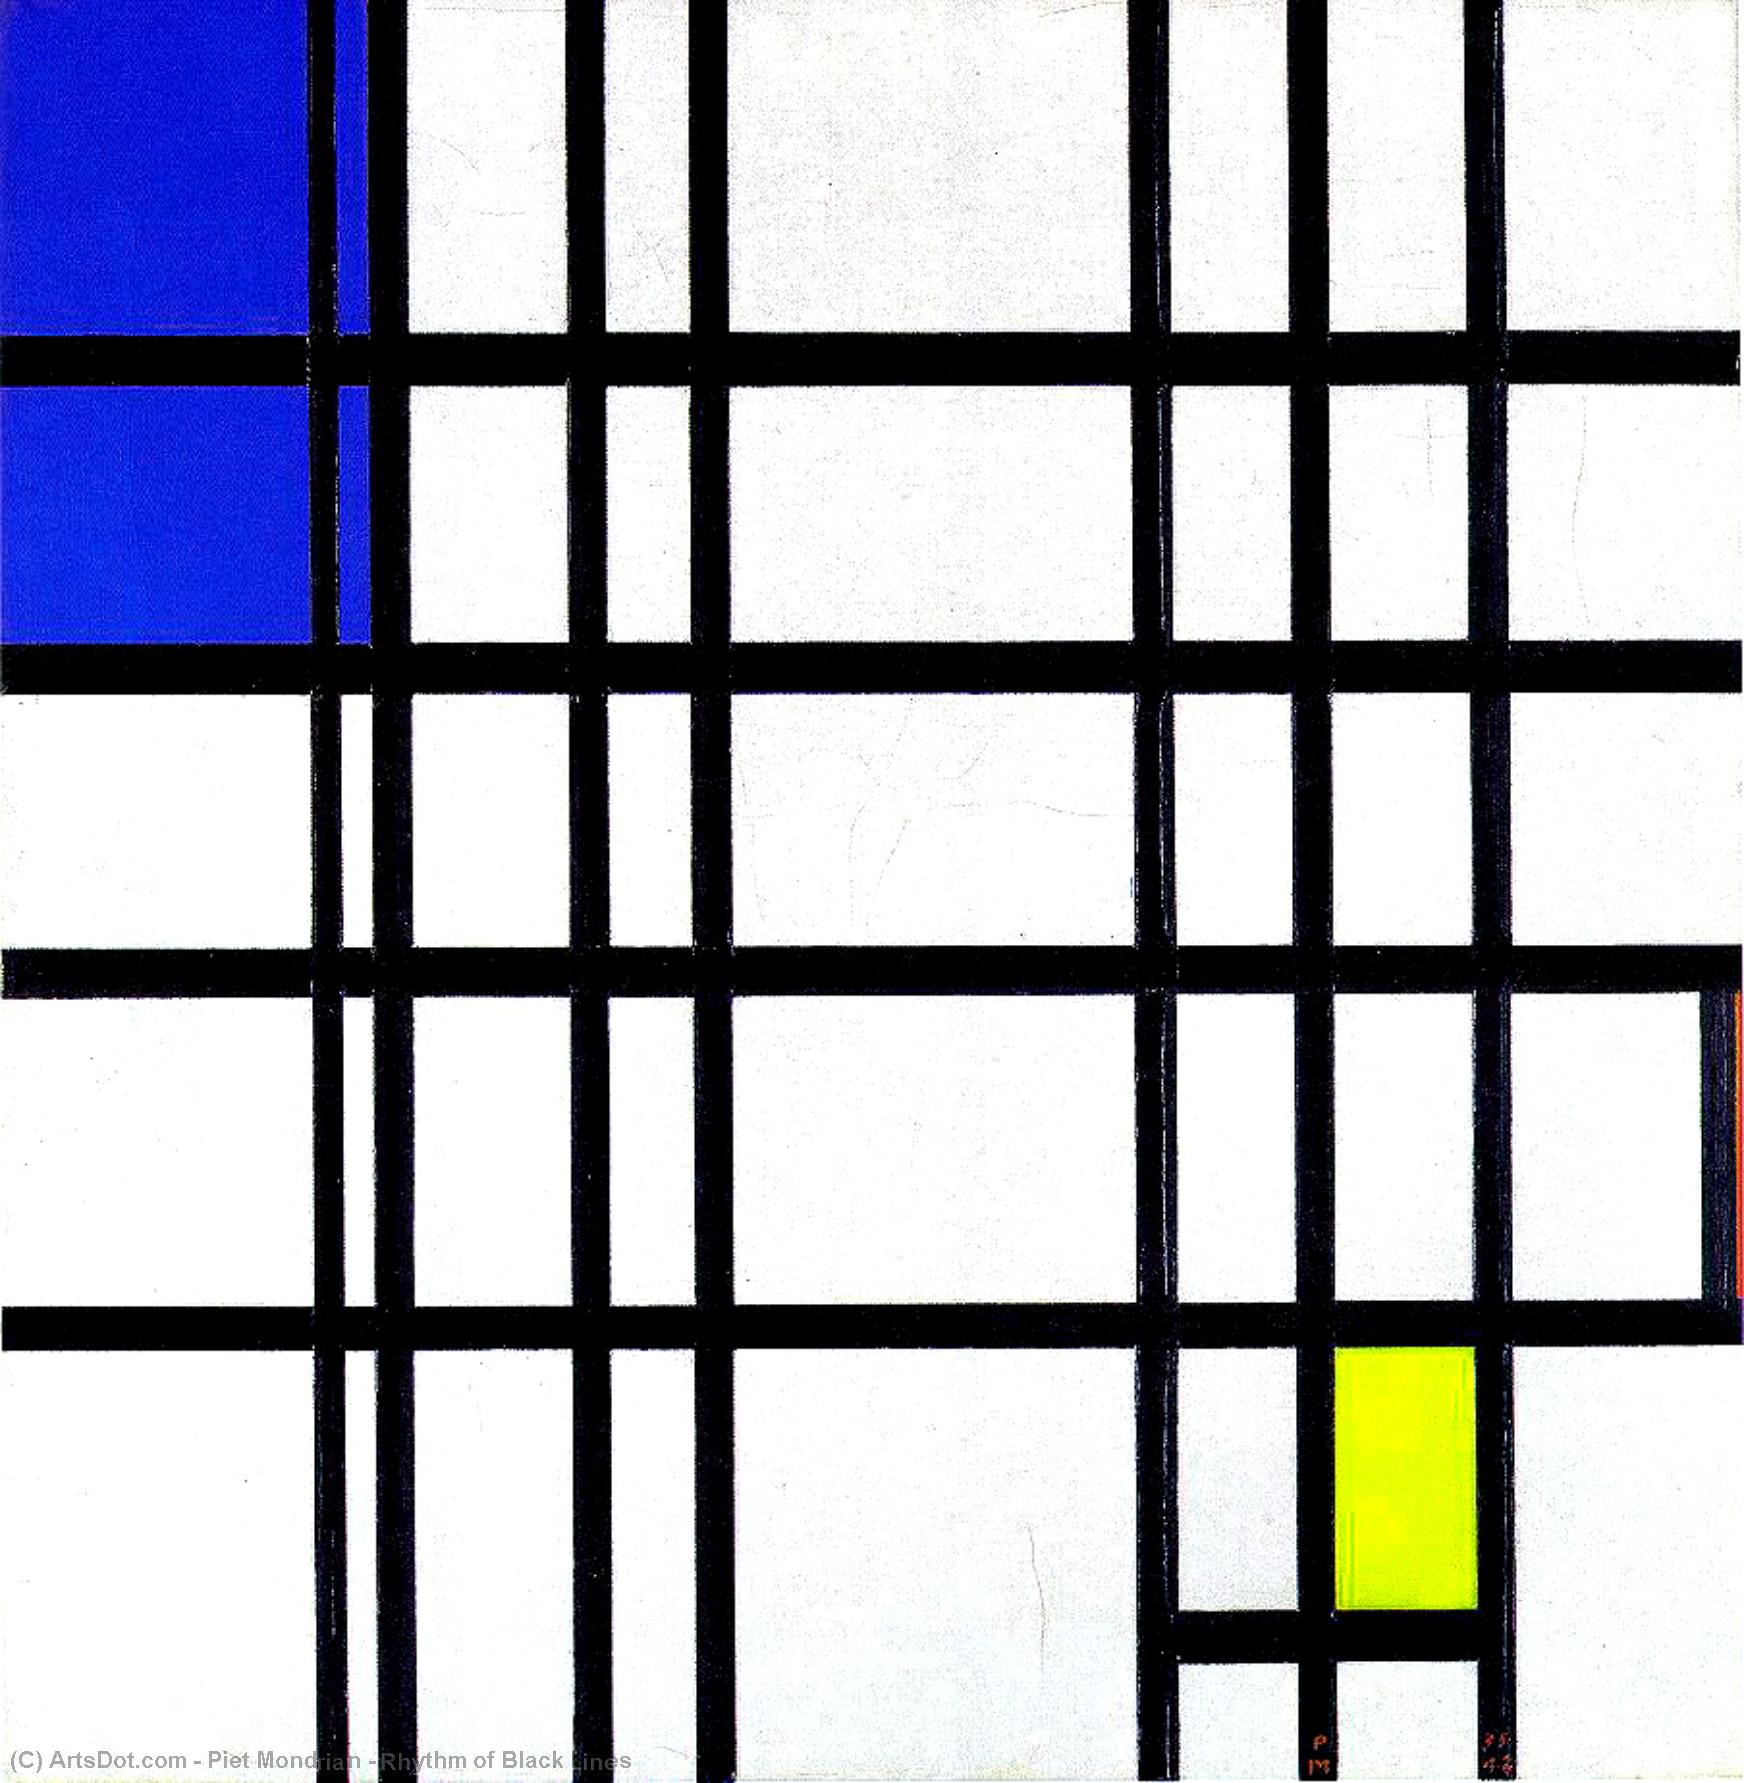 Wikioo.org - Bách khoa toàn thư về mỹ thuật - Vẽ tranh, Tác phẩm nghệ thuật Piet Mondrian - Rhythm of Black Lines